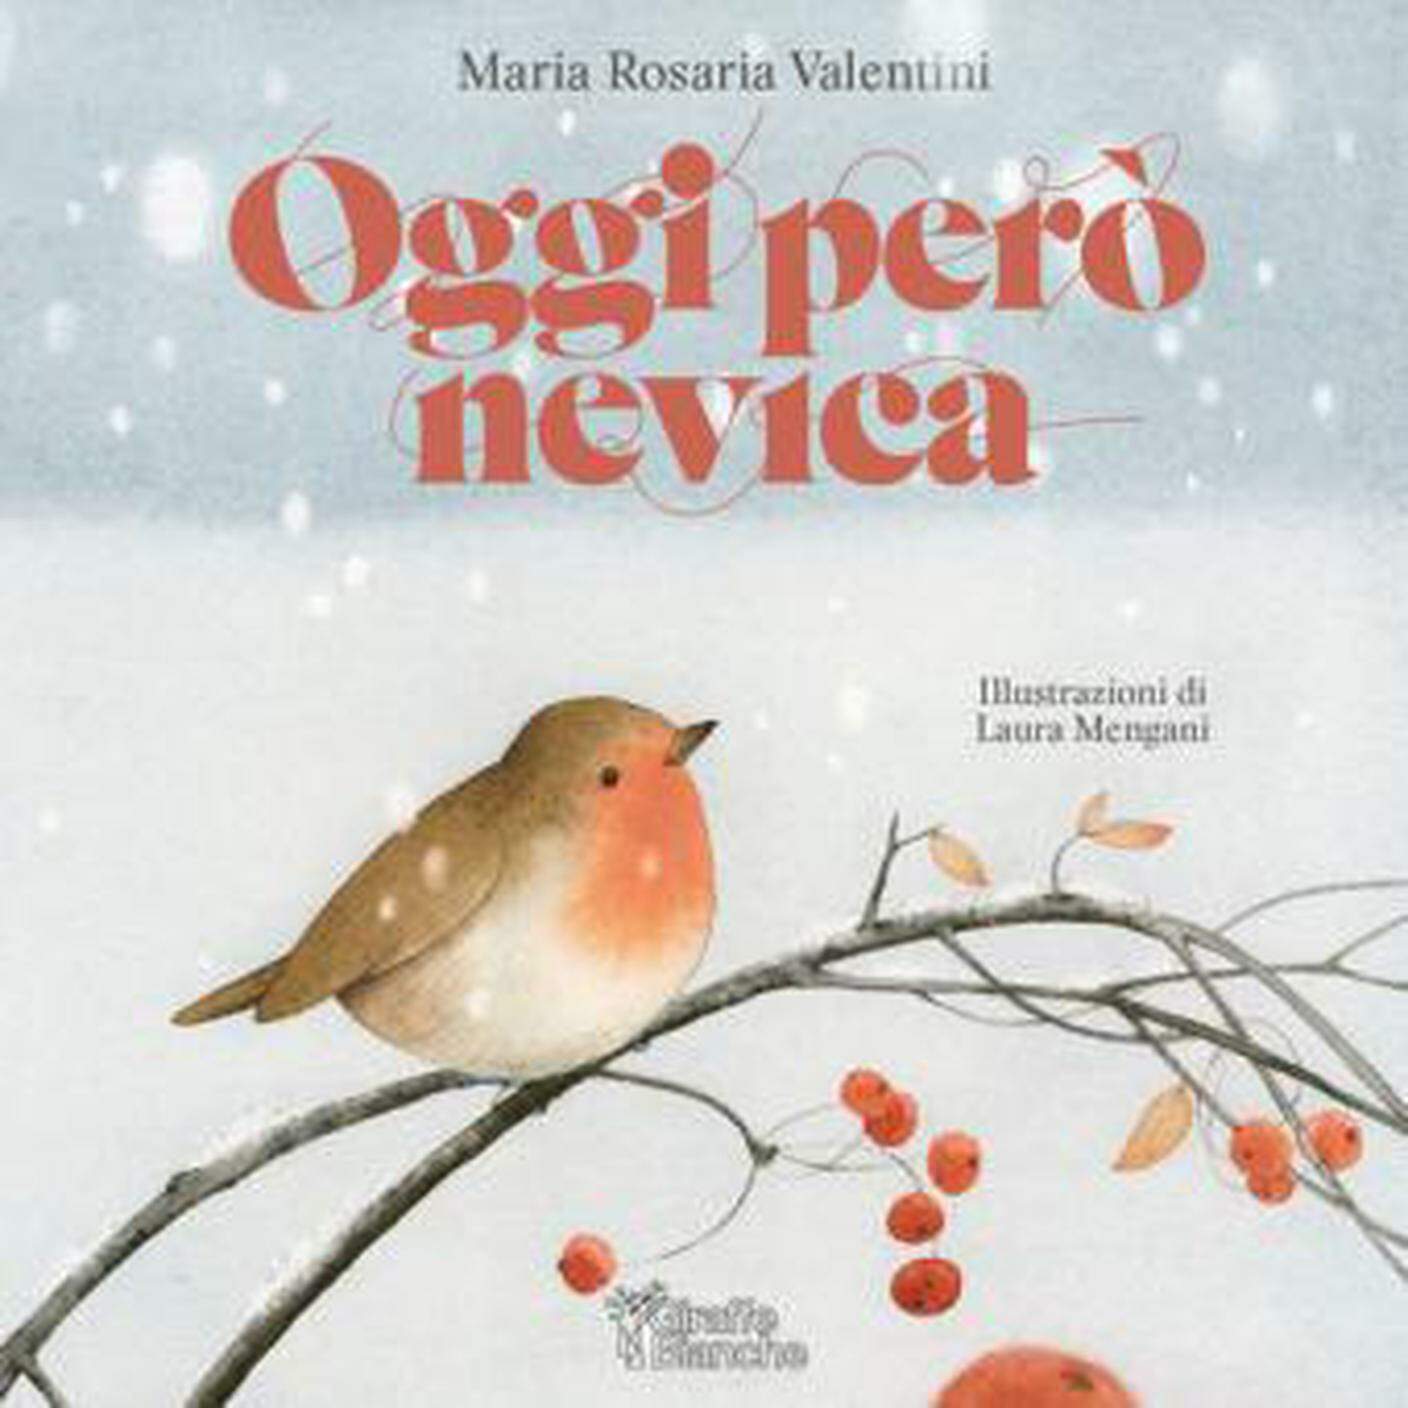 "Oggi però nevica" di Maria Rosaria Valentini; Giraffe Bianche Edizioni (dettaglio copertina) 